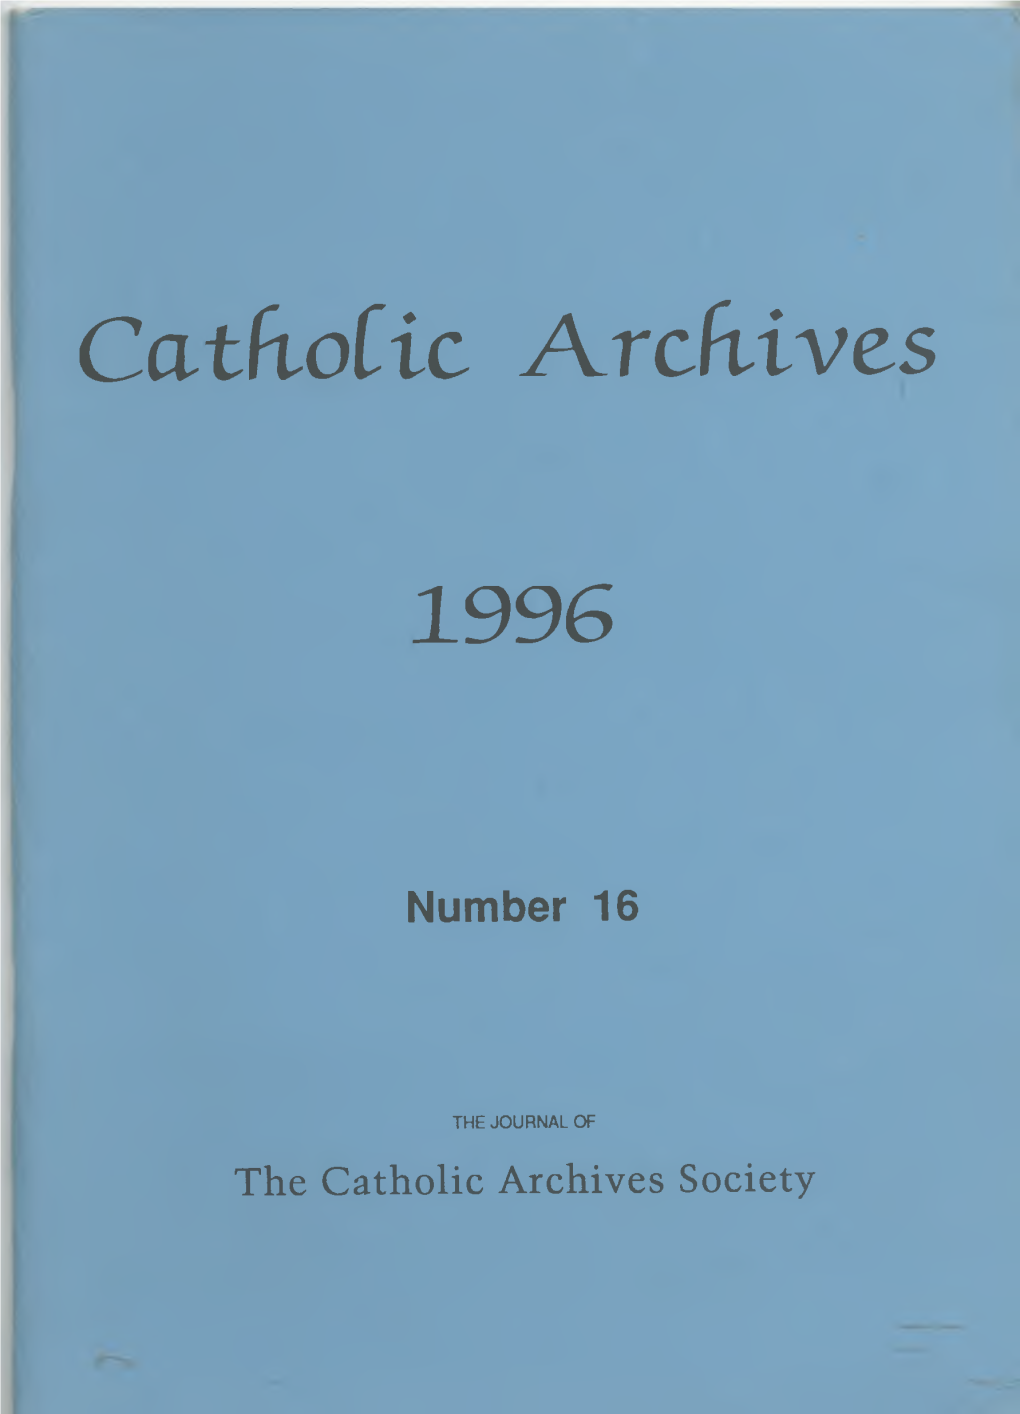 Catholic Archives 1996